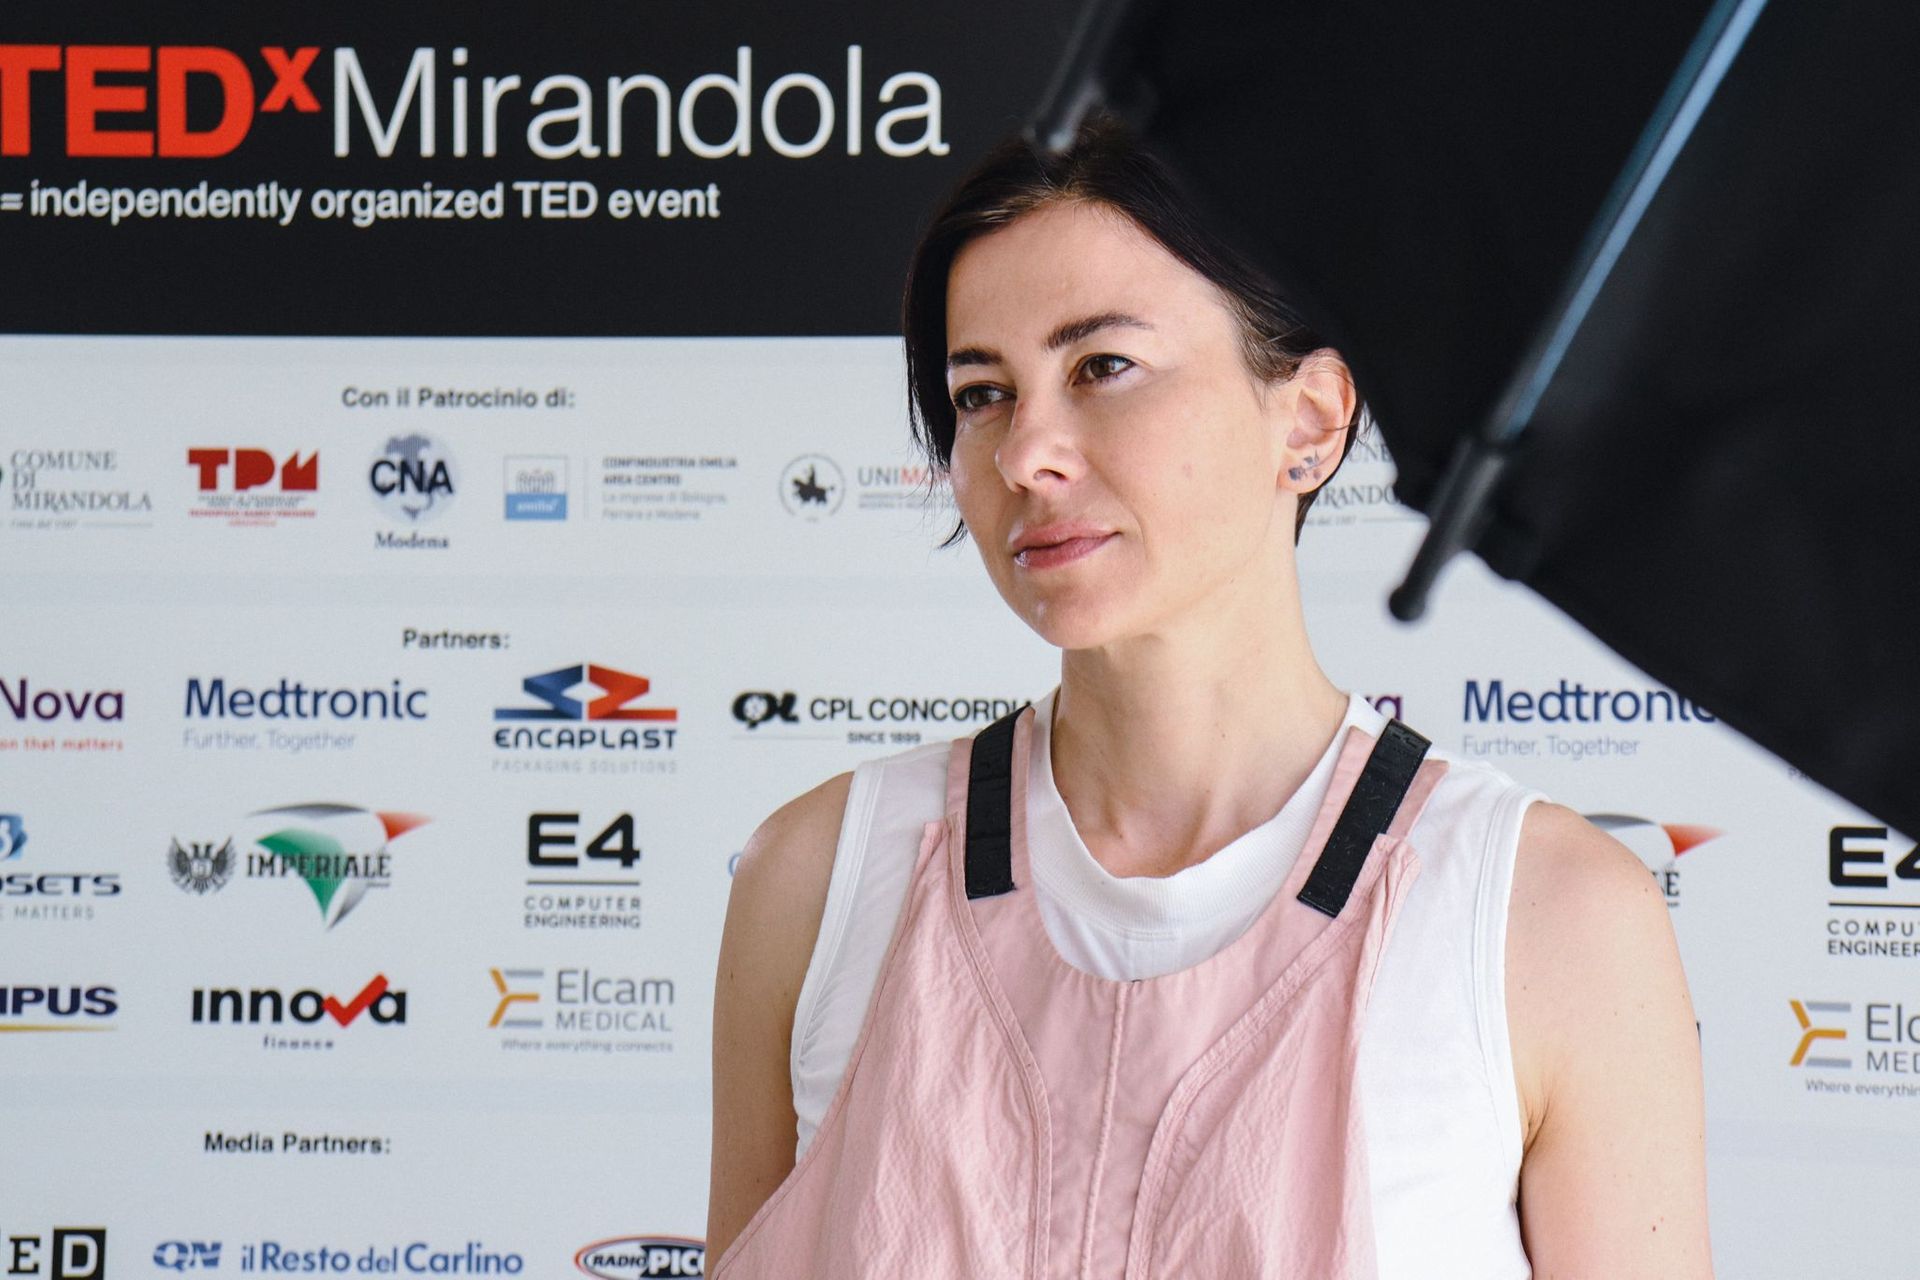 Fondatrice della Maverx Foundation, Francesca Veronesi è la figlia di Mario, pioniere del distretto biomedicale nel 1962: è stata una relatrice della prima edizione di TEDx Mirandola